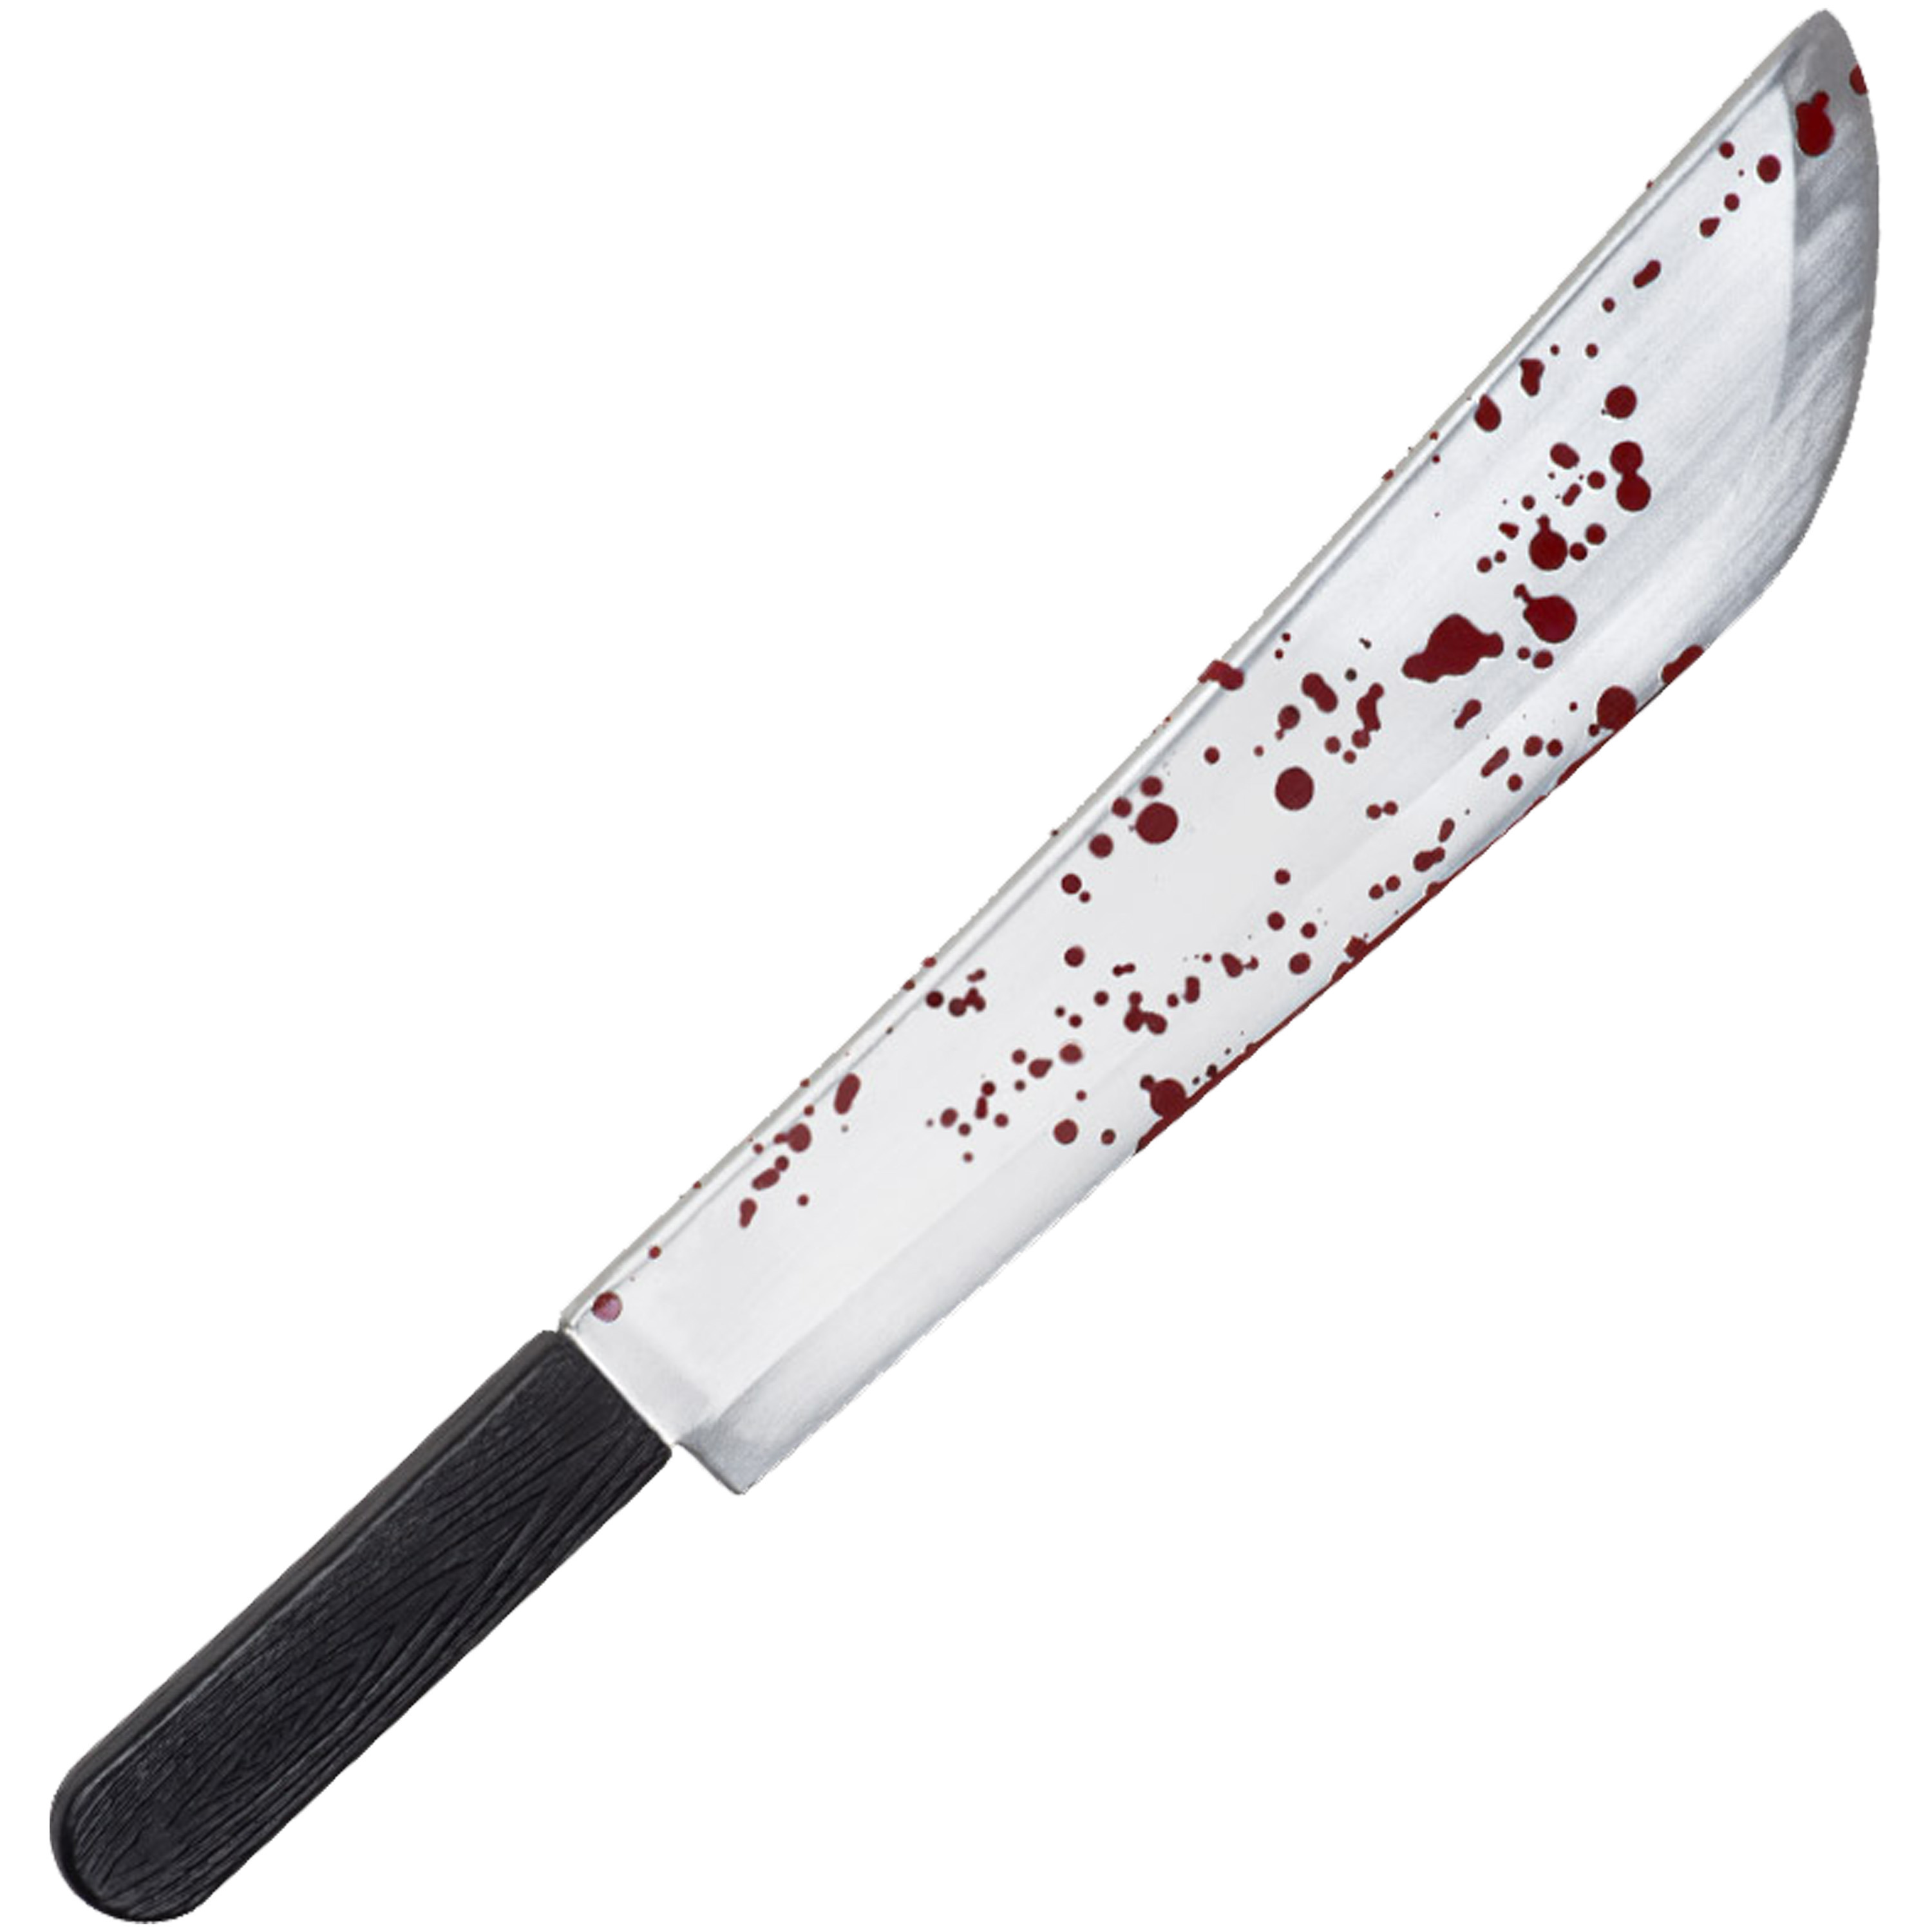 Machete-mes groot plastic 53 cm Halloween-zombie killer verkleed wapens met bloedspetters